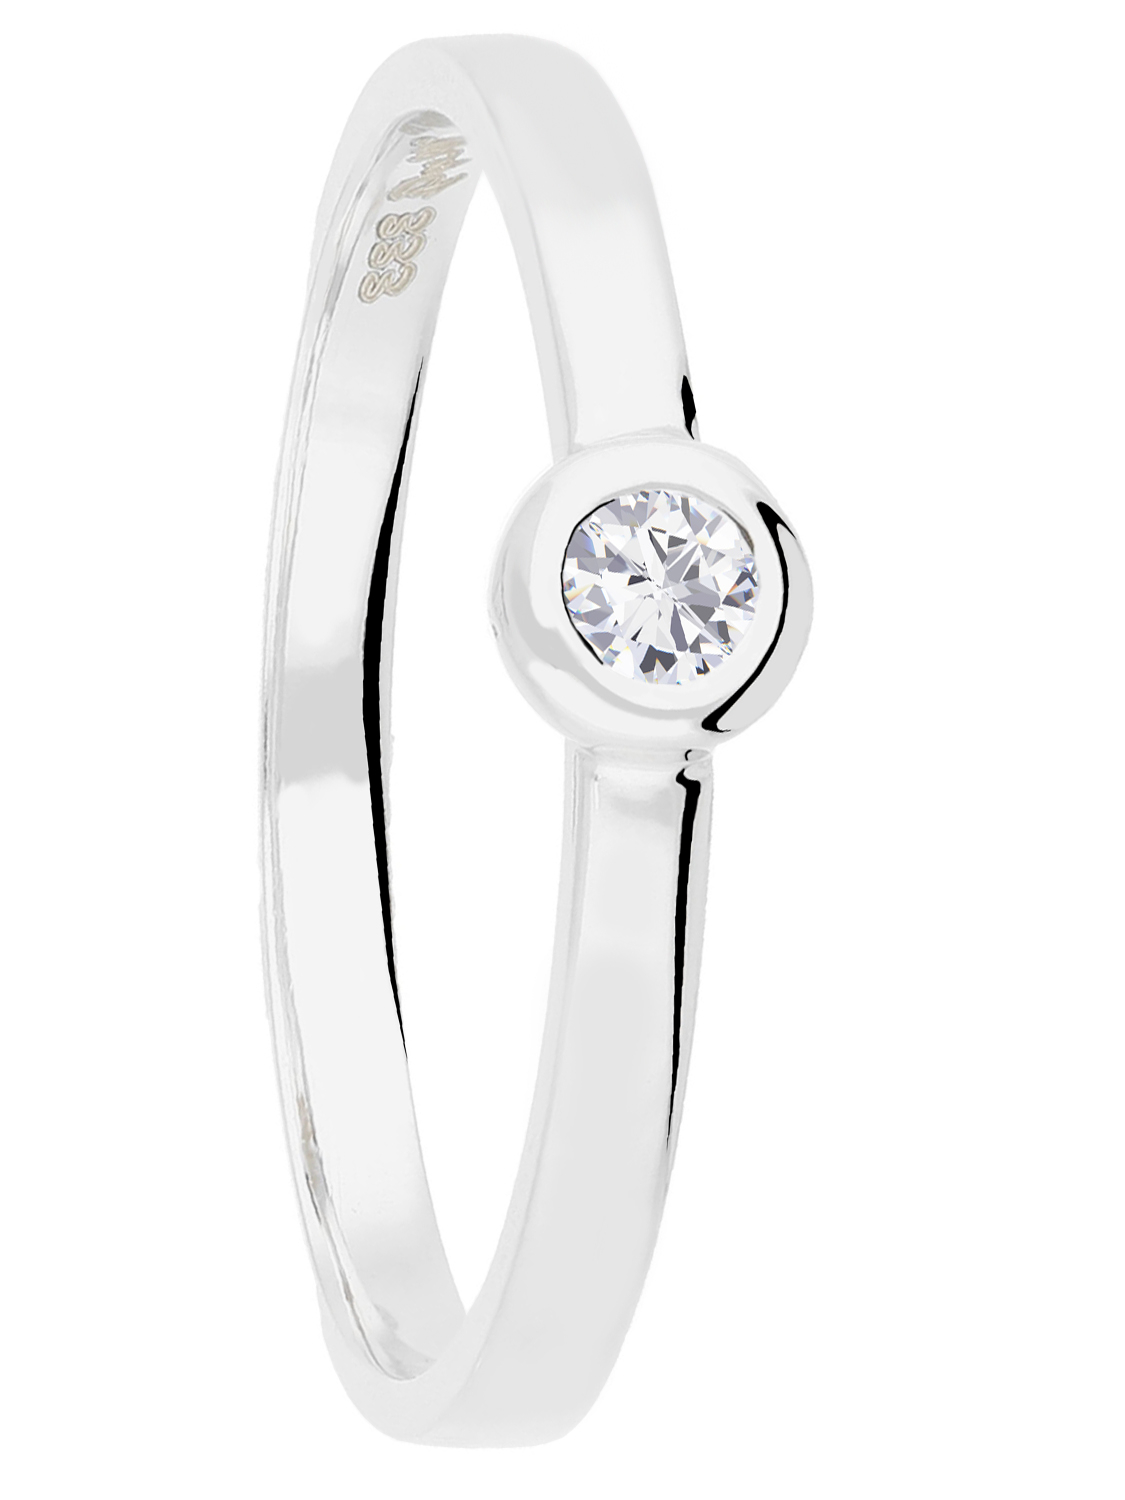 Penelope - Diamant Verlobungsring 333 Weissgold - 0,05ct. - Größe 56